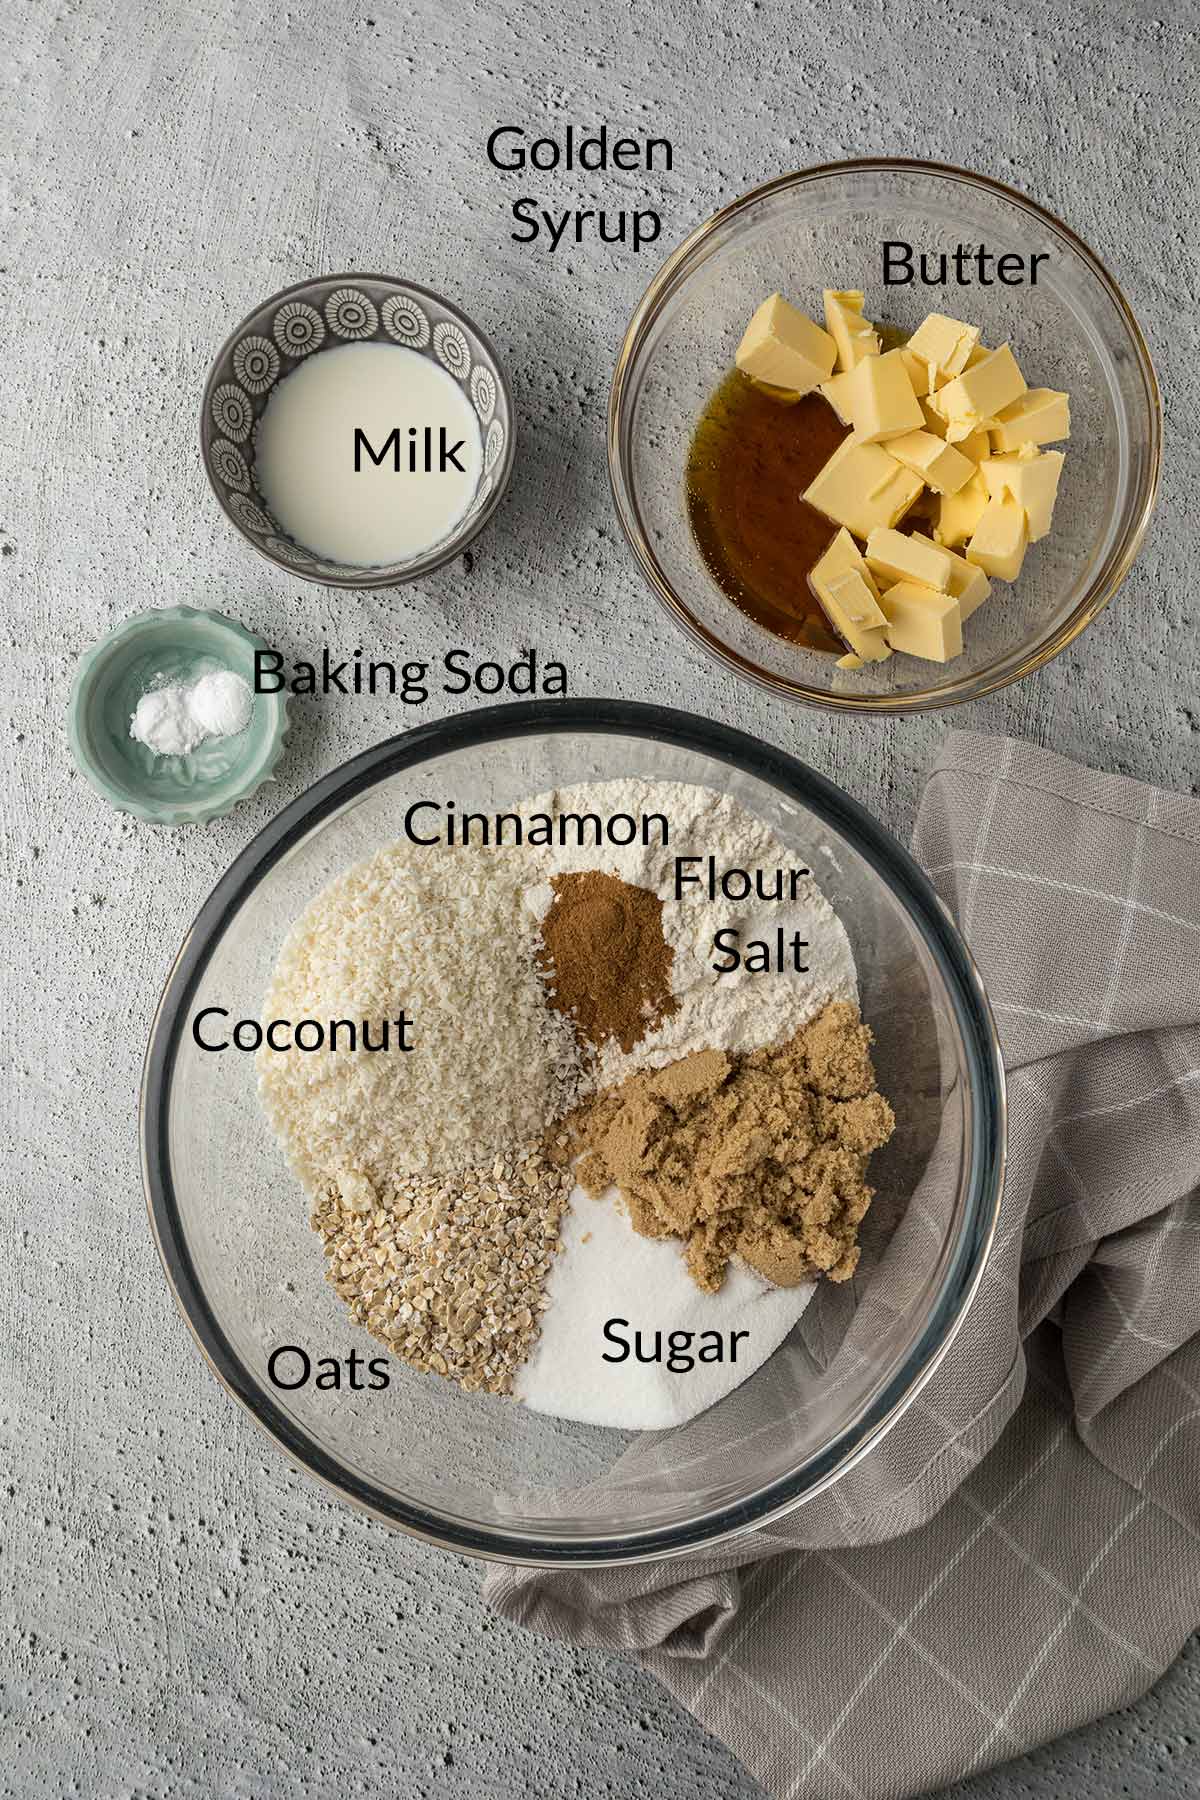 Crunchie ingredients in bowls.